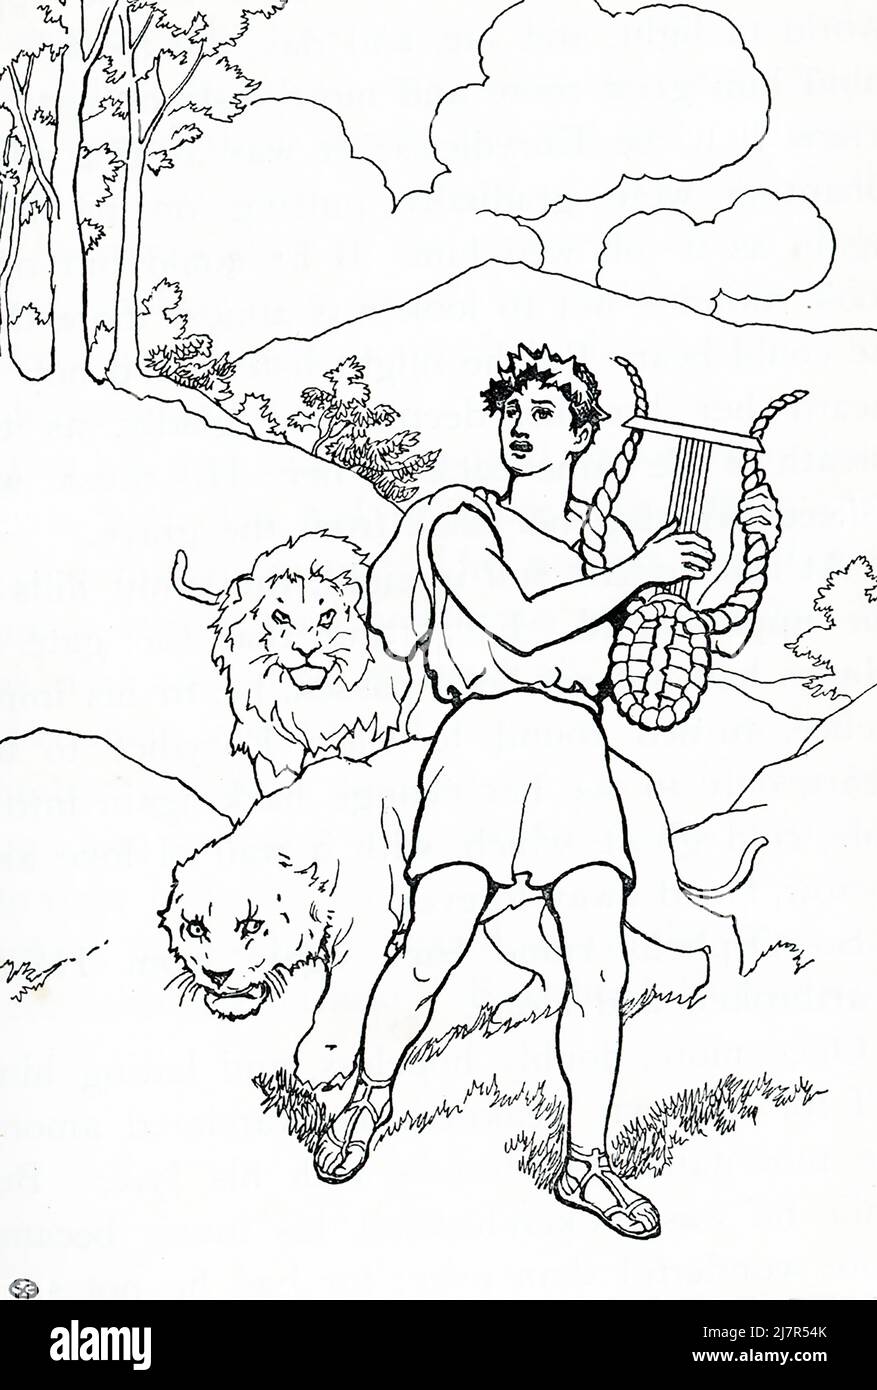 Dans la mythologie grecque, Orpheus était un célèbre barde thrace dont la musique lyre charlait même les animaux les plus sauvages (vus ici) et même les plantes, les arbres et les rochers. Fils de la Muse Calliope, il a épousé la nymphe Eurydice après avoir participé à l'expédition Argonaut. Selon la mythologie grecque, après qu'un serpent l'ait tuée, Orpheus est allé à Hadès (le monde sous-jacent) pour la chercher. Charmés par sa musique, les dieux l'ont libérée, mais à condition qu'il ne la regarde pas jusqu'à ce qu'il atteigne le monde supérieur. Alors qu'il avait naissant le monde supérieur, il regarda en arrière et, par conséquent, elle a disparu de sa prise en arrière à l'Underwo Banque D'Images